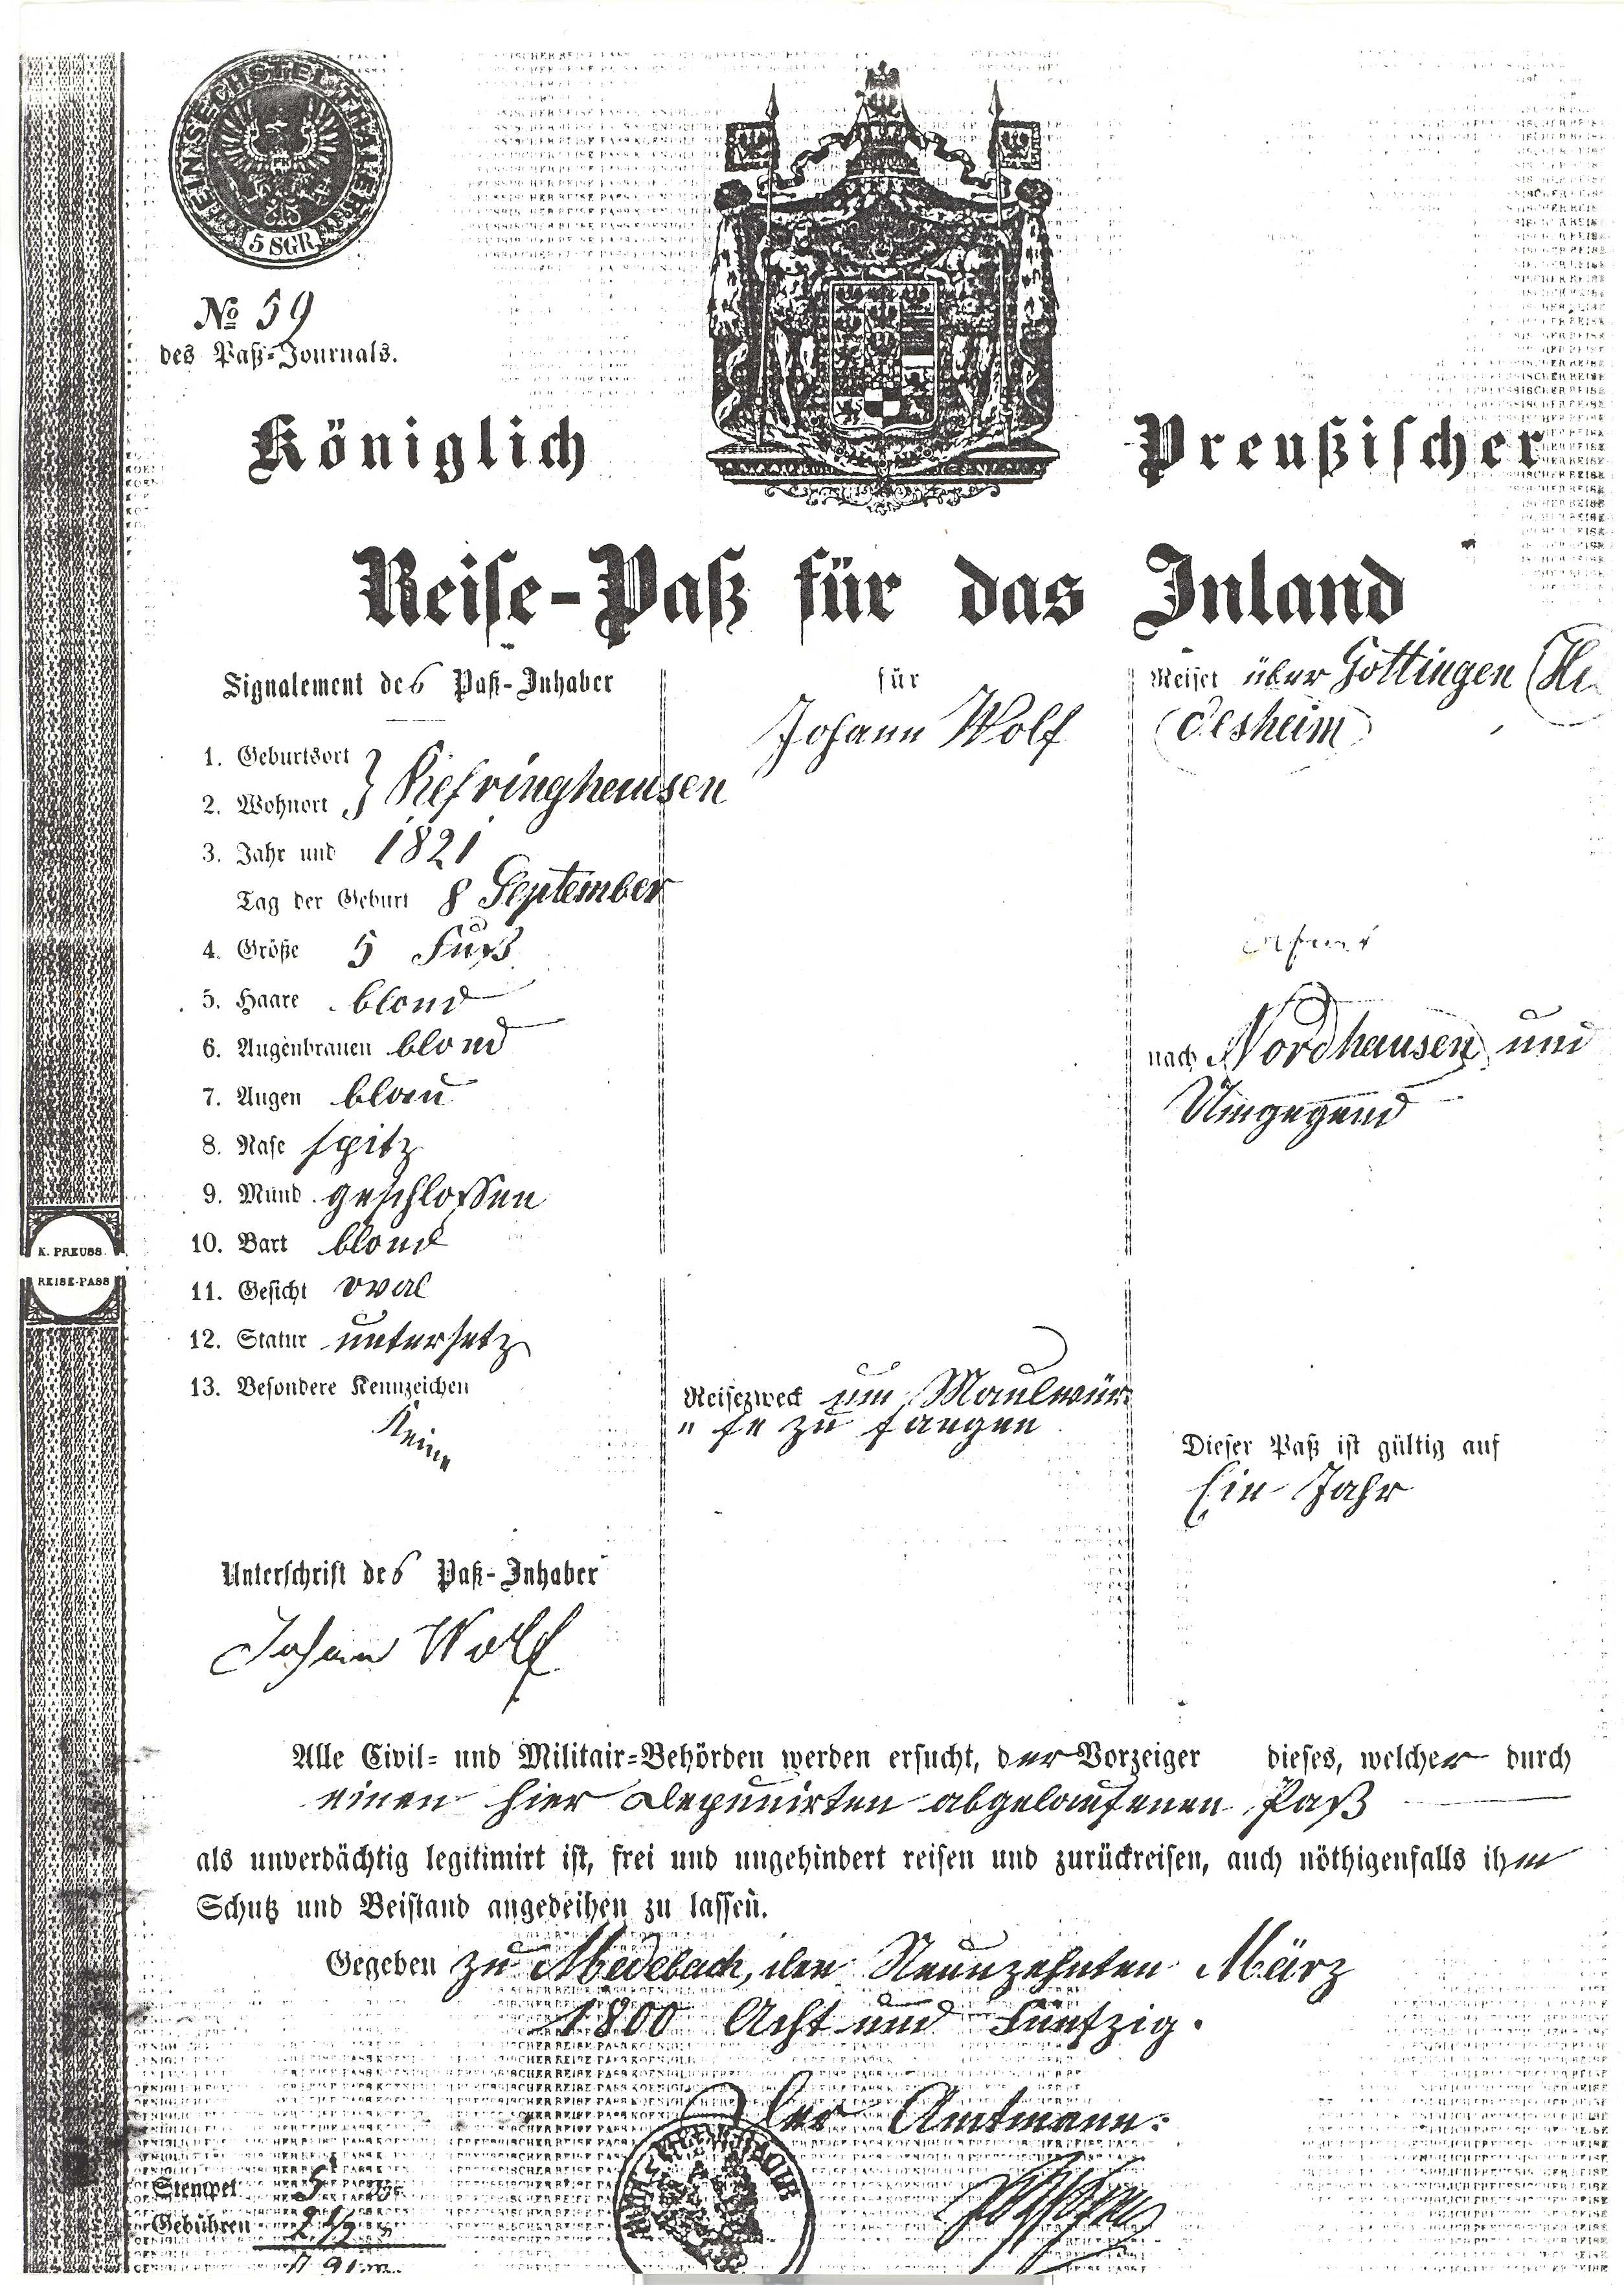 Reisepass von 1850